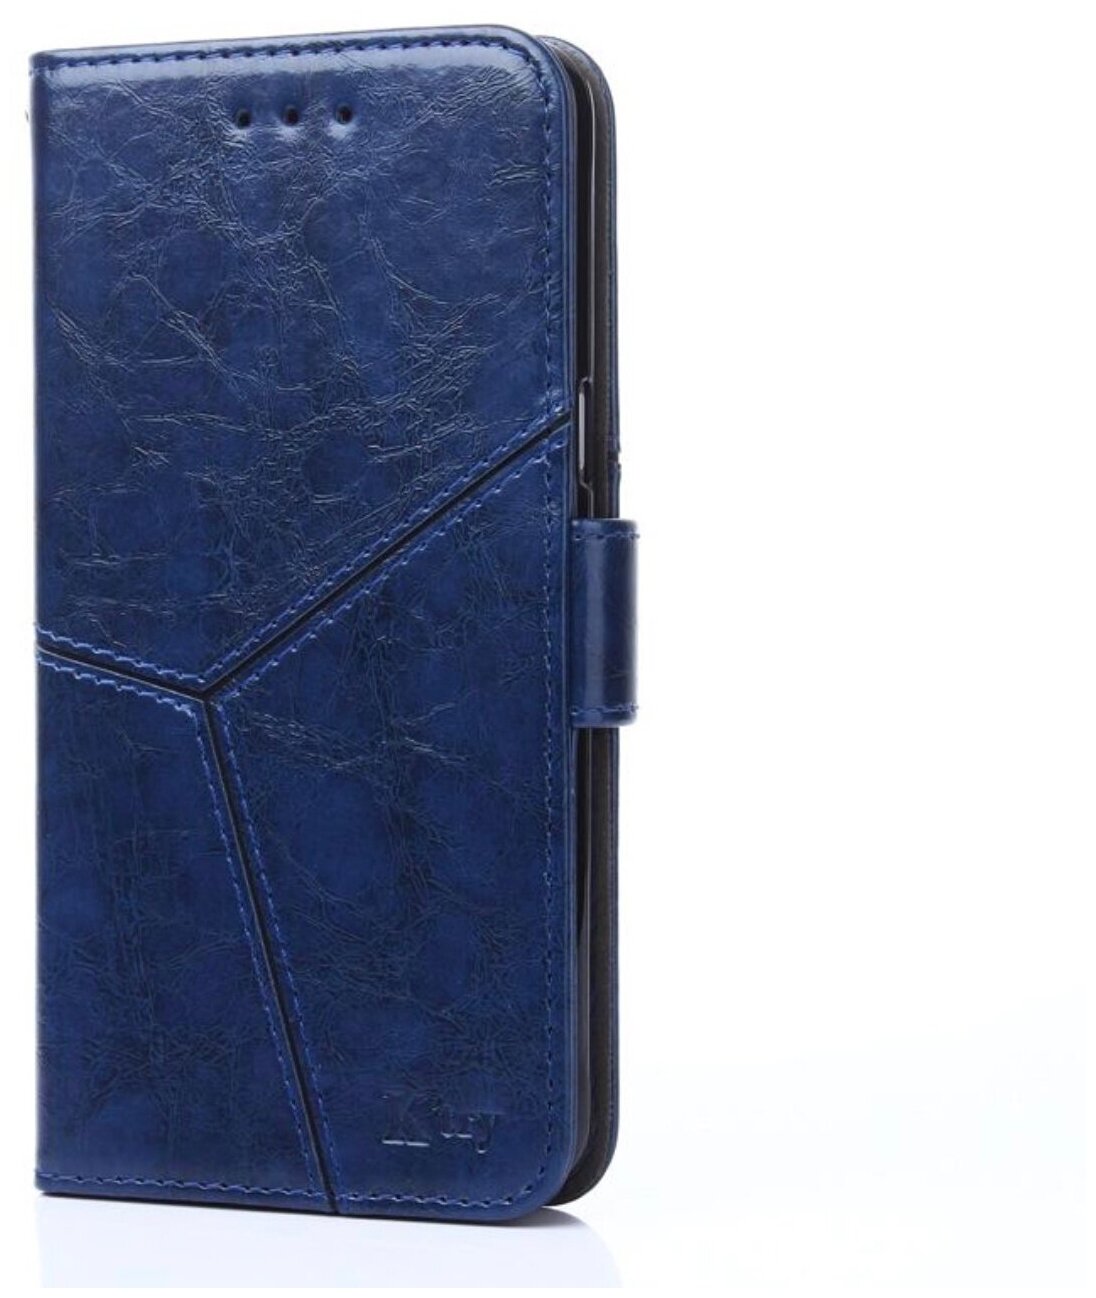 Чехол-книжка Чехол.ру для Huawei P20 Lite / Nova 3e прошитый по контуру с необычным геометрическим швом синий